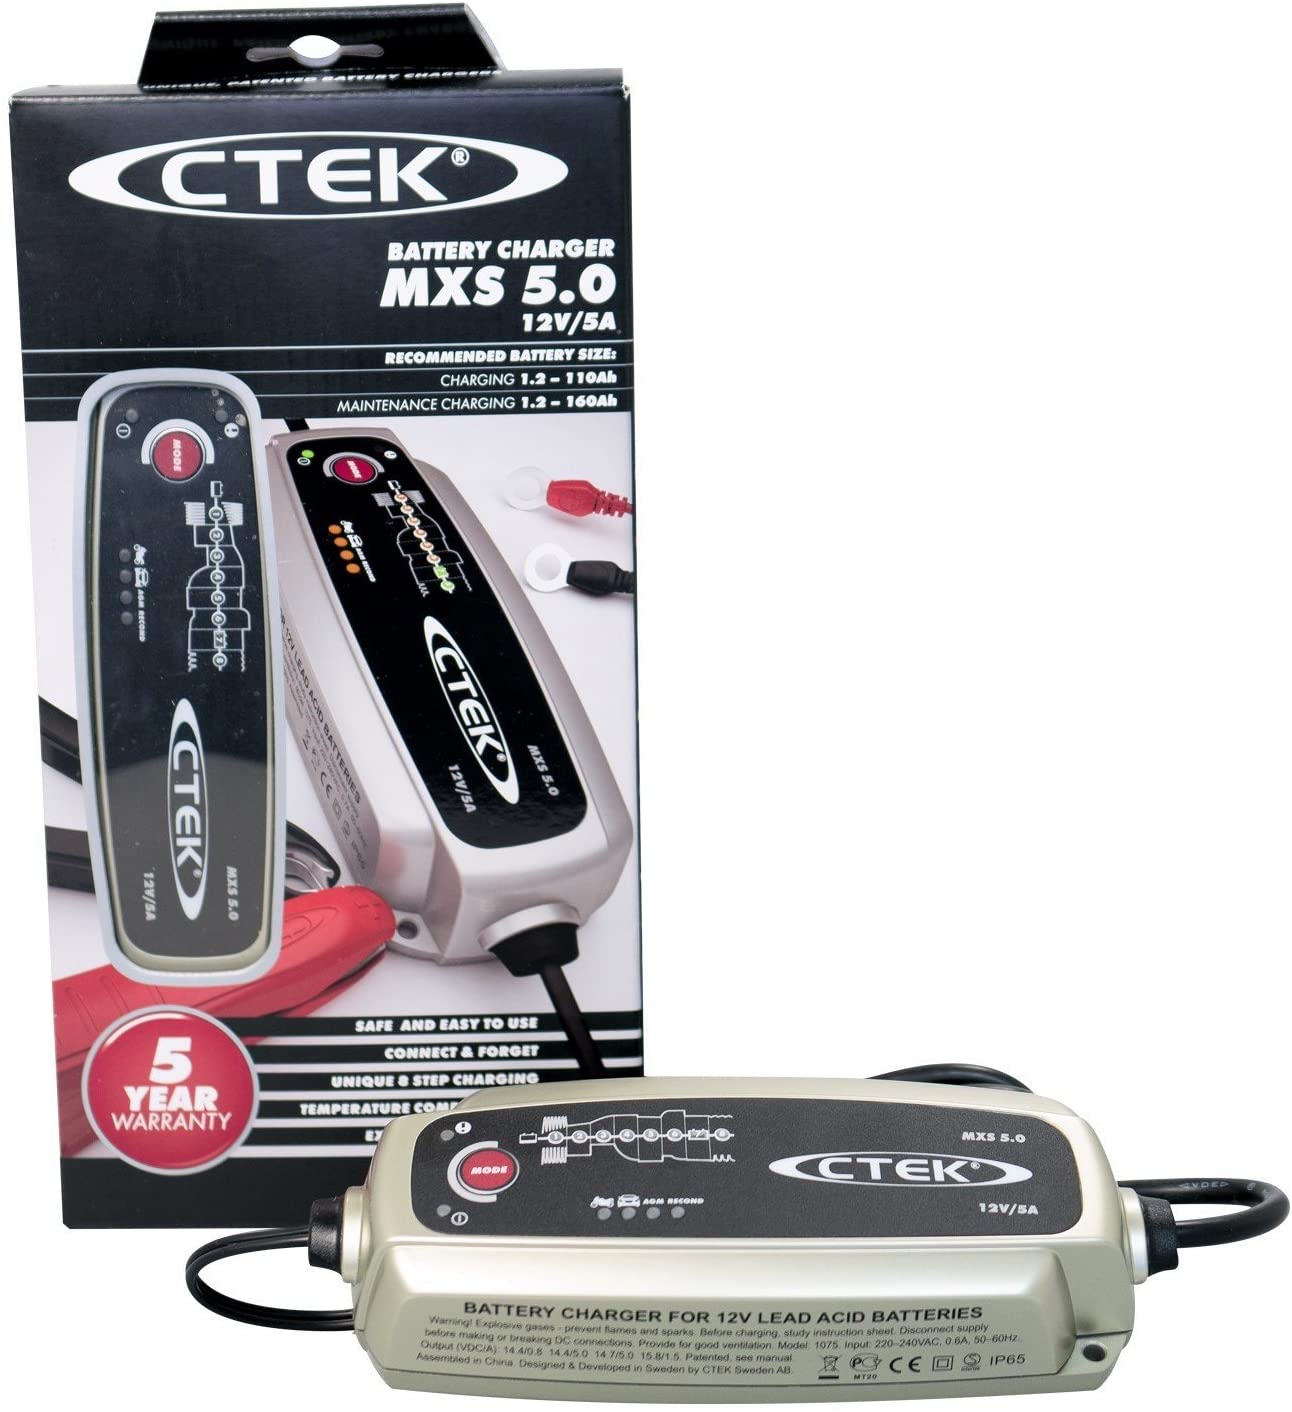 CTEK CTEK MXS 5.0 BATTERIE-LADEGERAET günstig